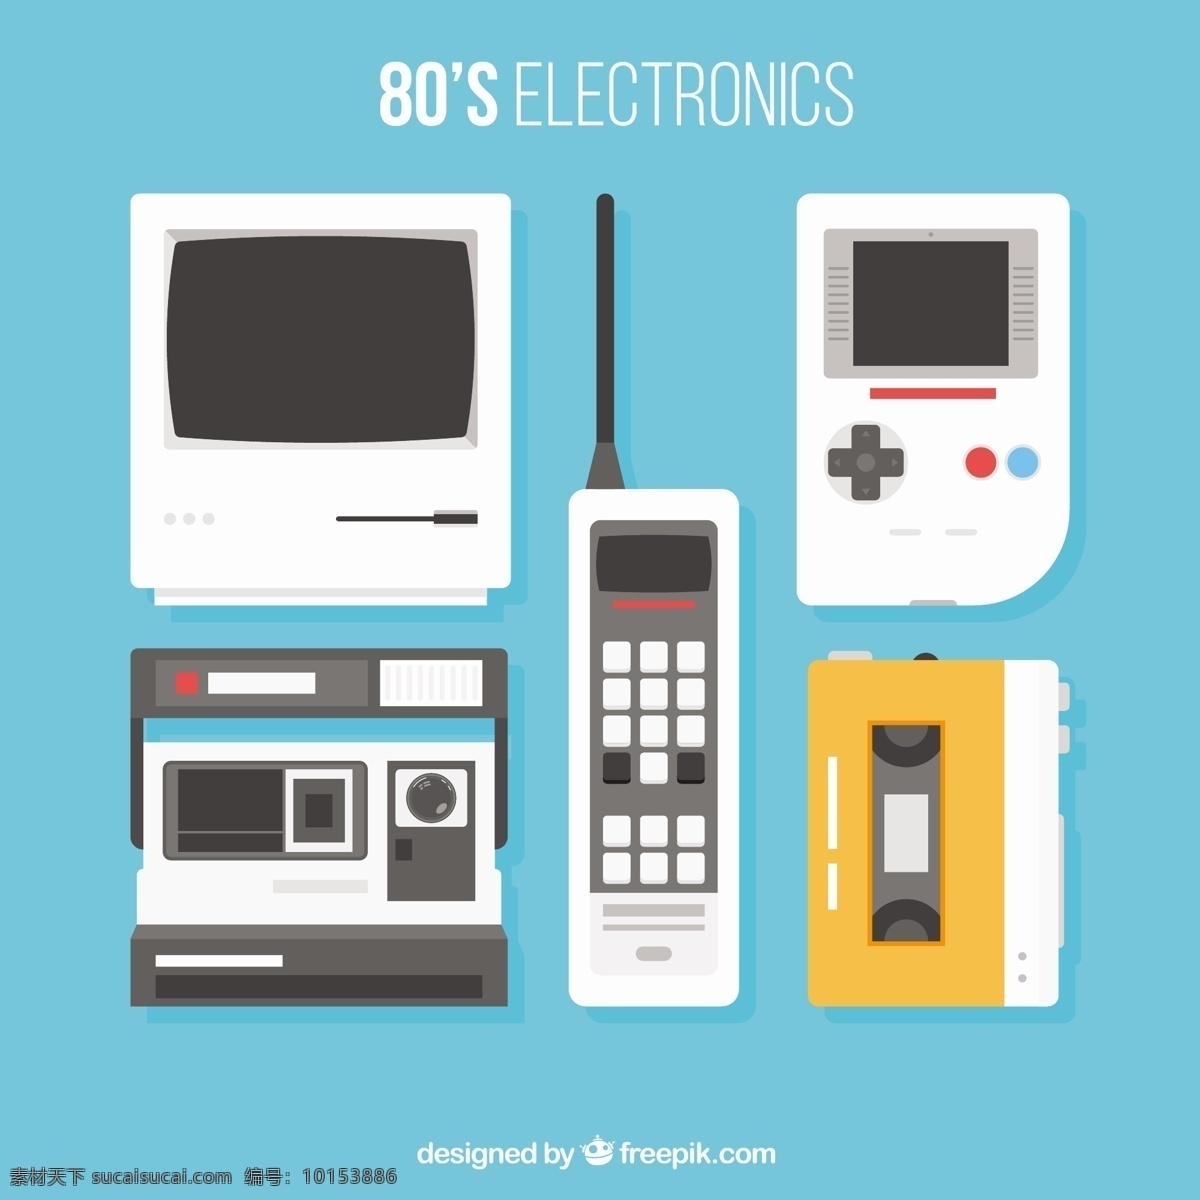 八十年代 电子设备 摘要电脑 相机 手机 复古设计 几何 时尚 平 电话 彩色 平面设计 胶带 现代 装饰 电子 流行 小工具 对象 游戏